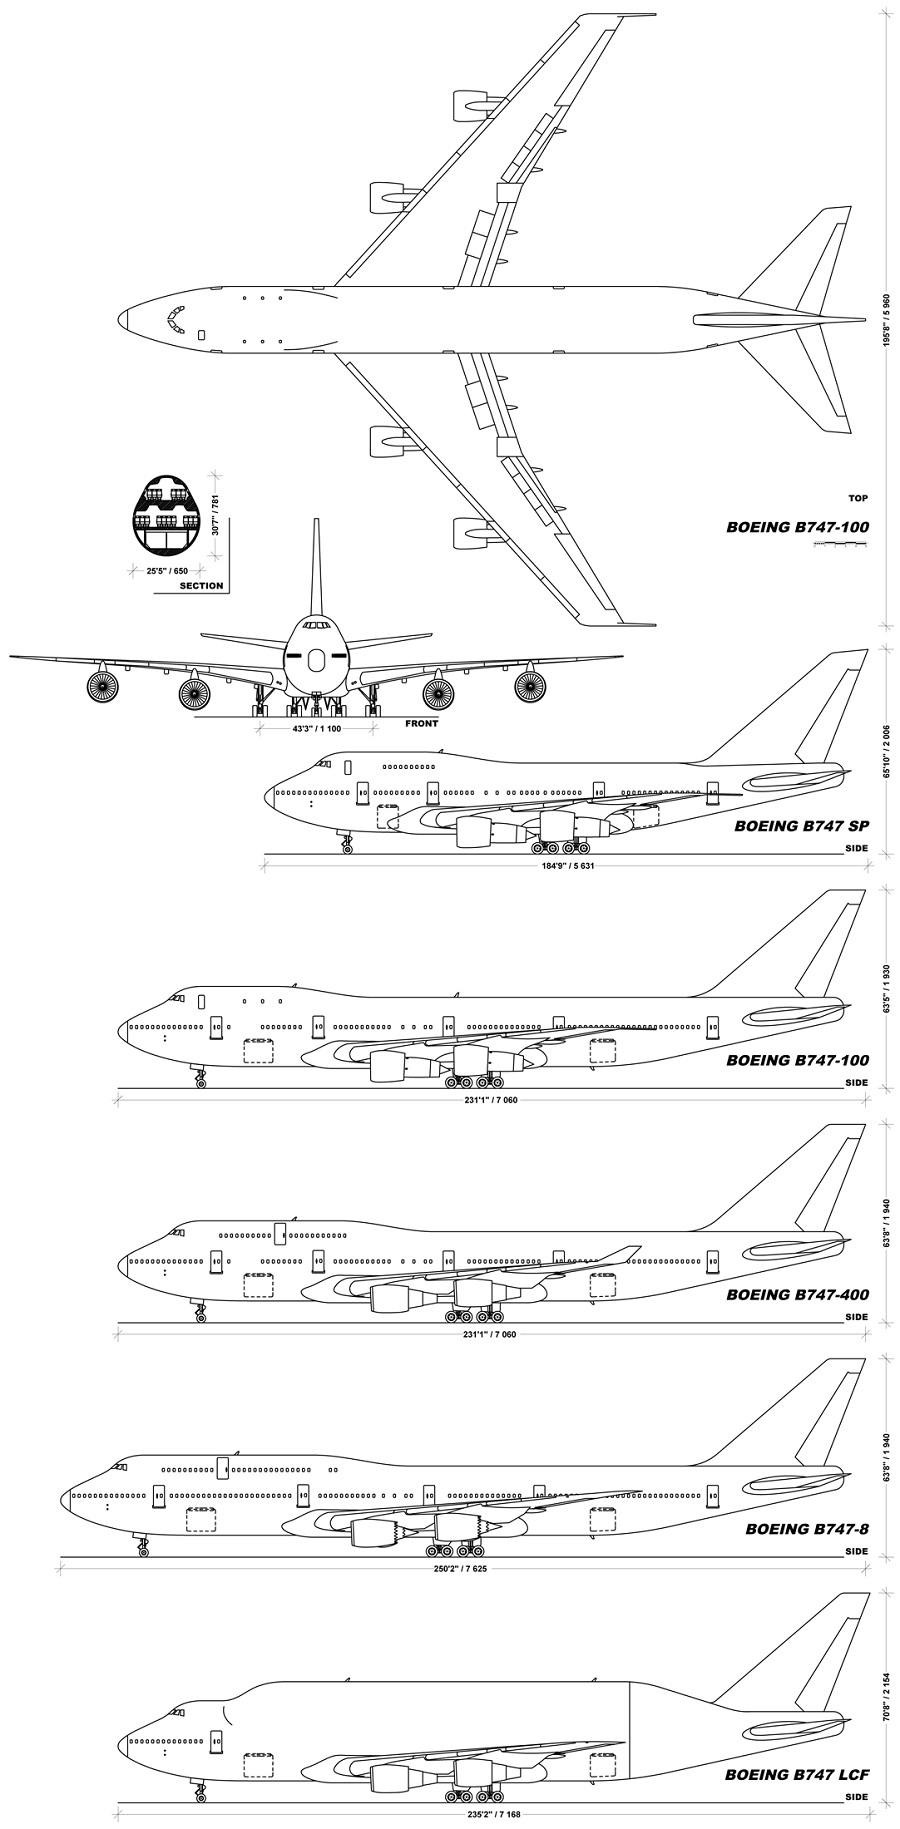 Модификации Boeing 747. Фото: Wikimedia Commons/Julien.Scavini